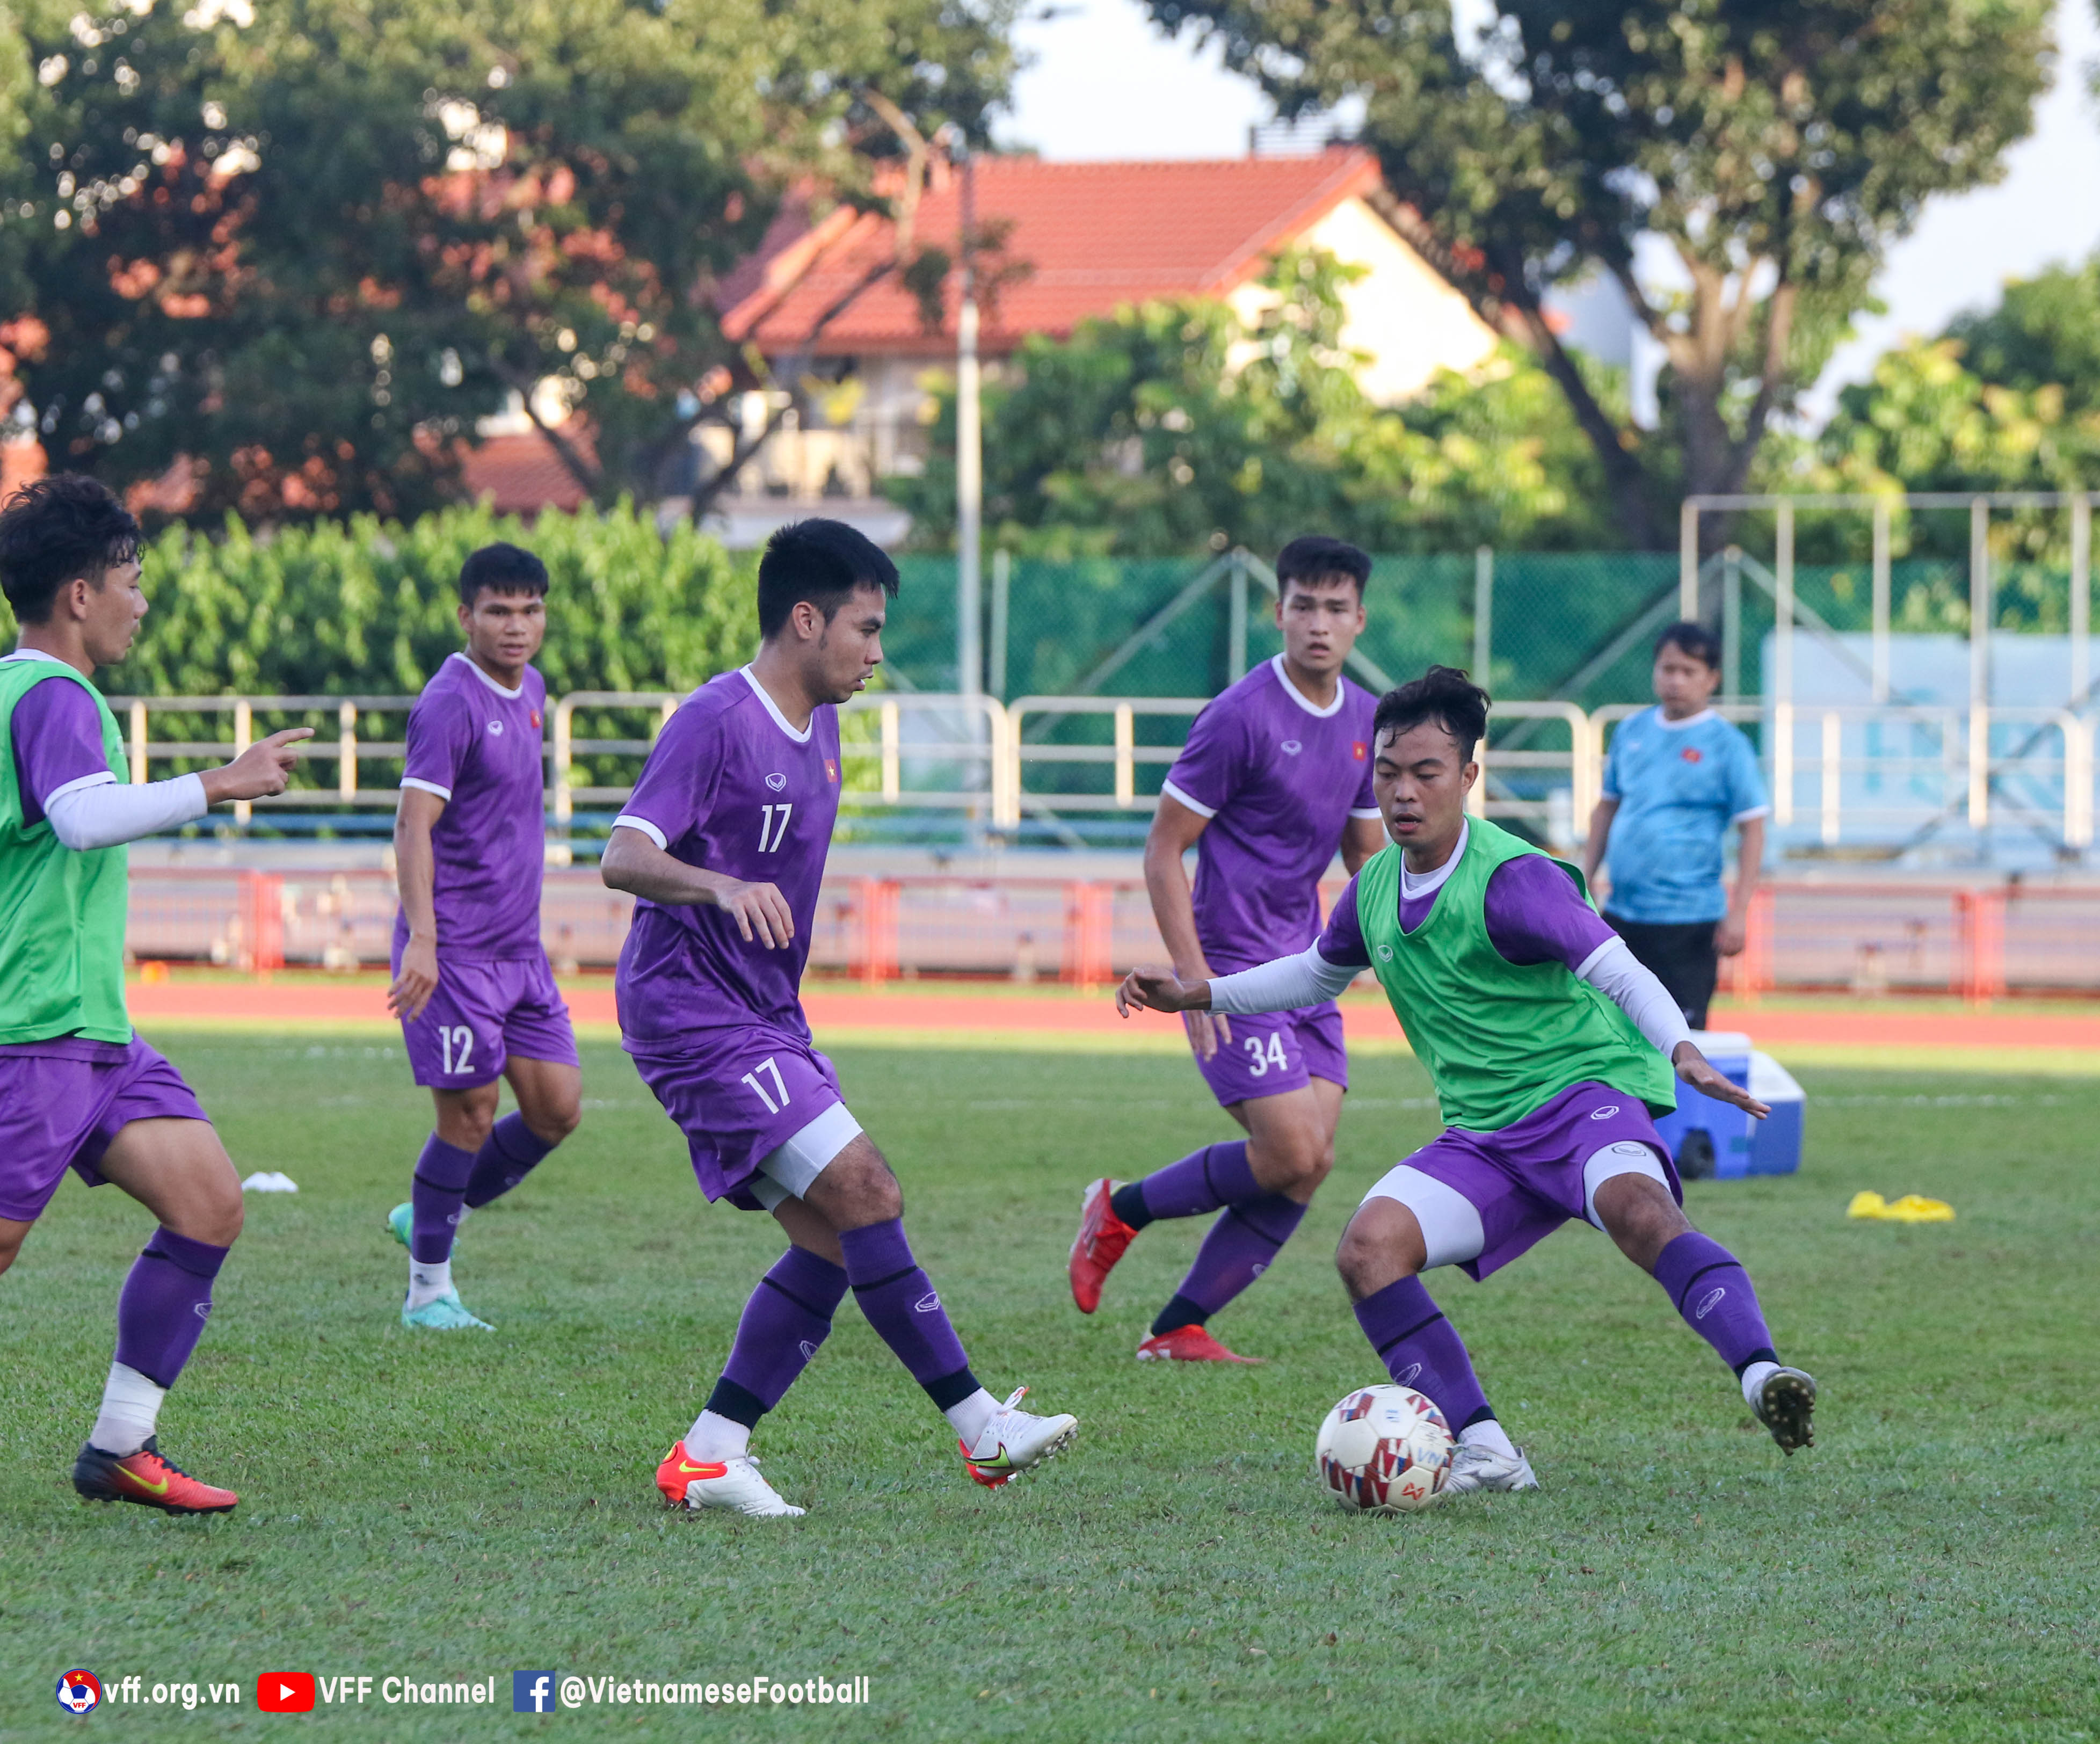 Tuyển Việt Nam hứng khởi chờ trận đấu với Indonesia - Ảnh 2.